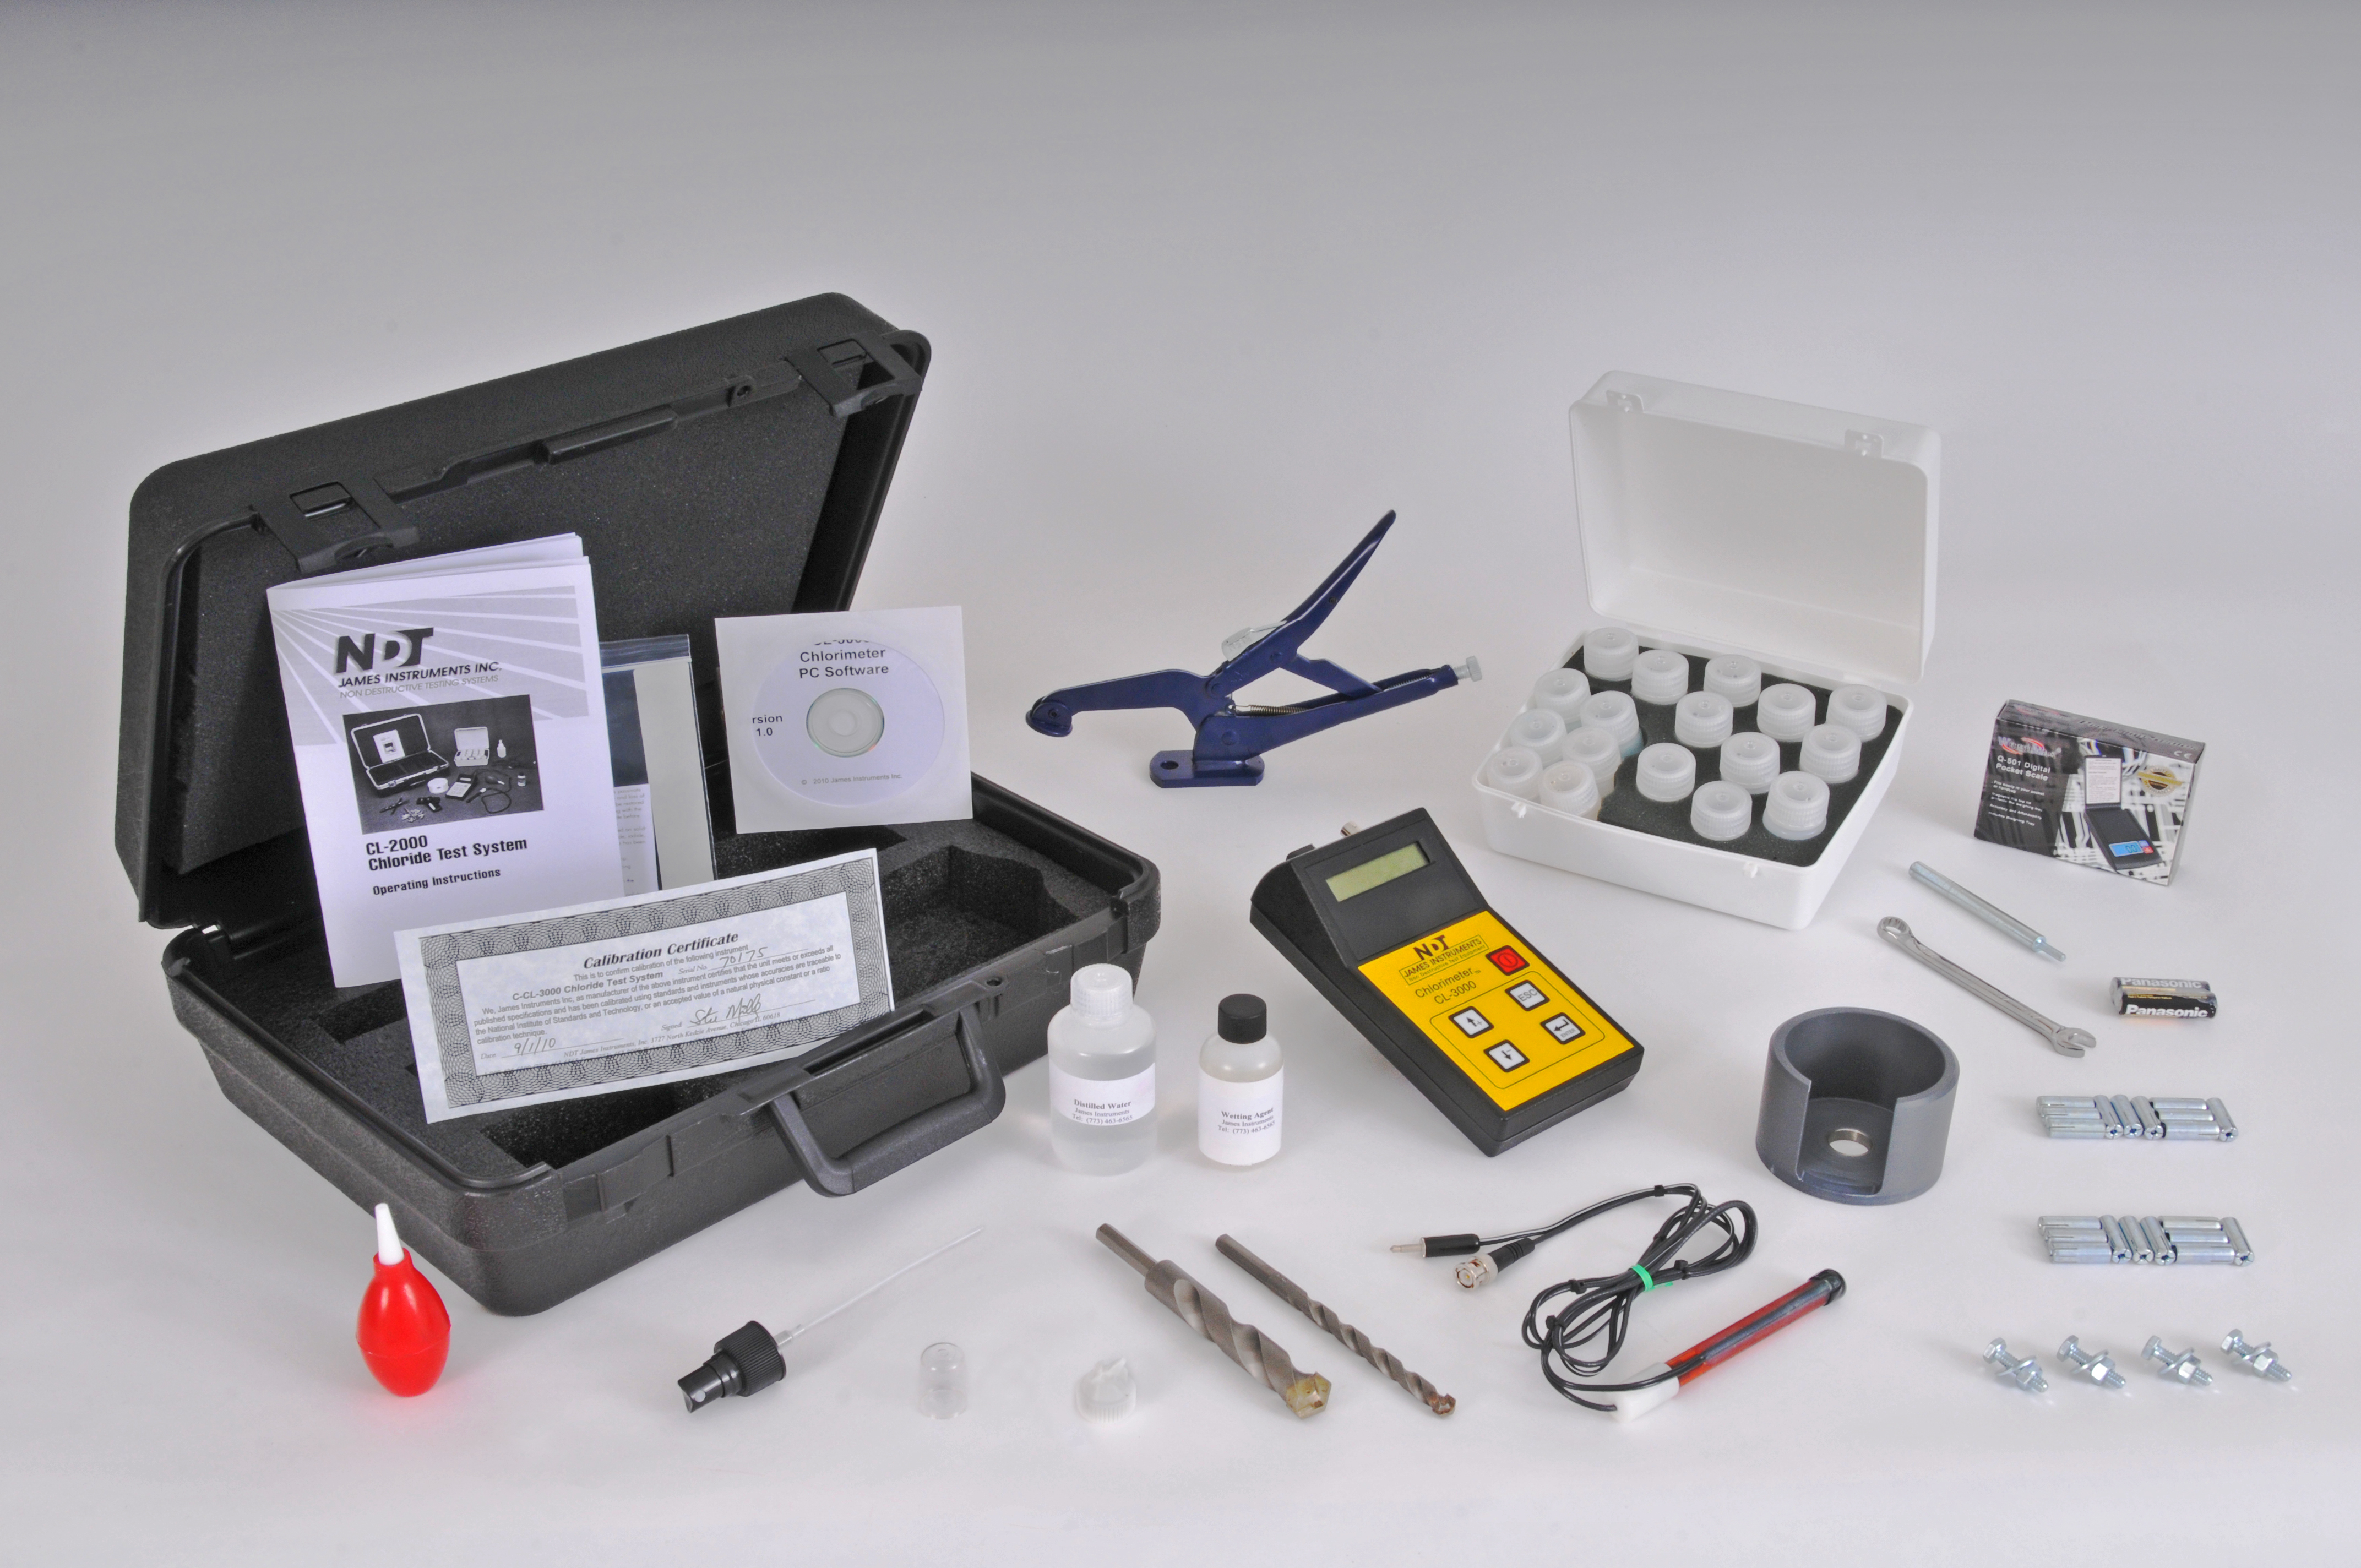 Chlorimeter Complete Test System